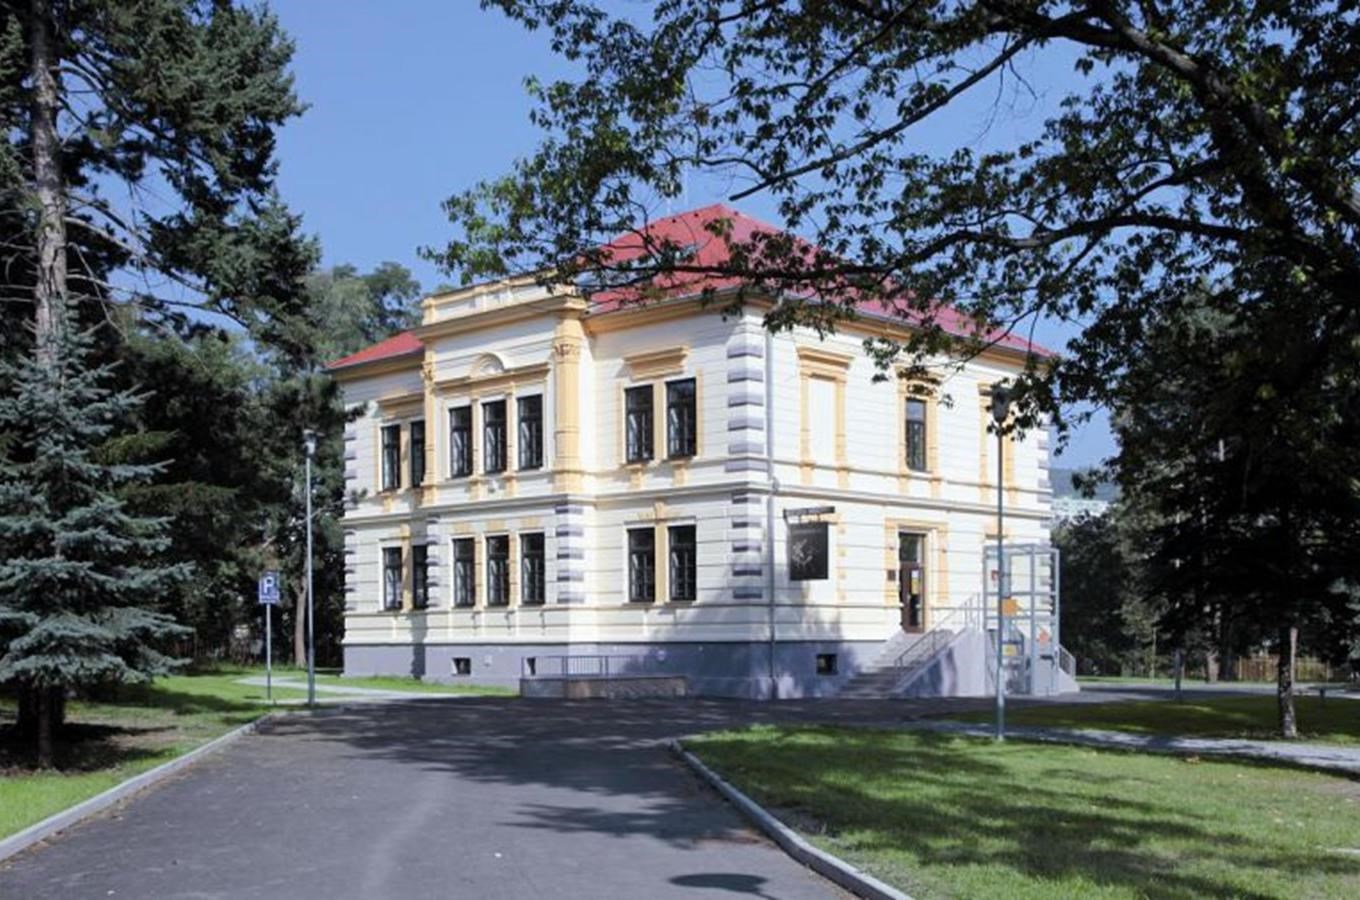 Kludského vila - expozice věnovaná rodině Kludských v Jirkově